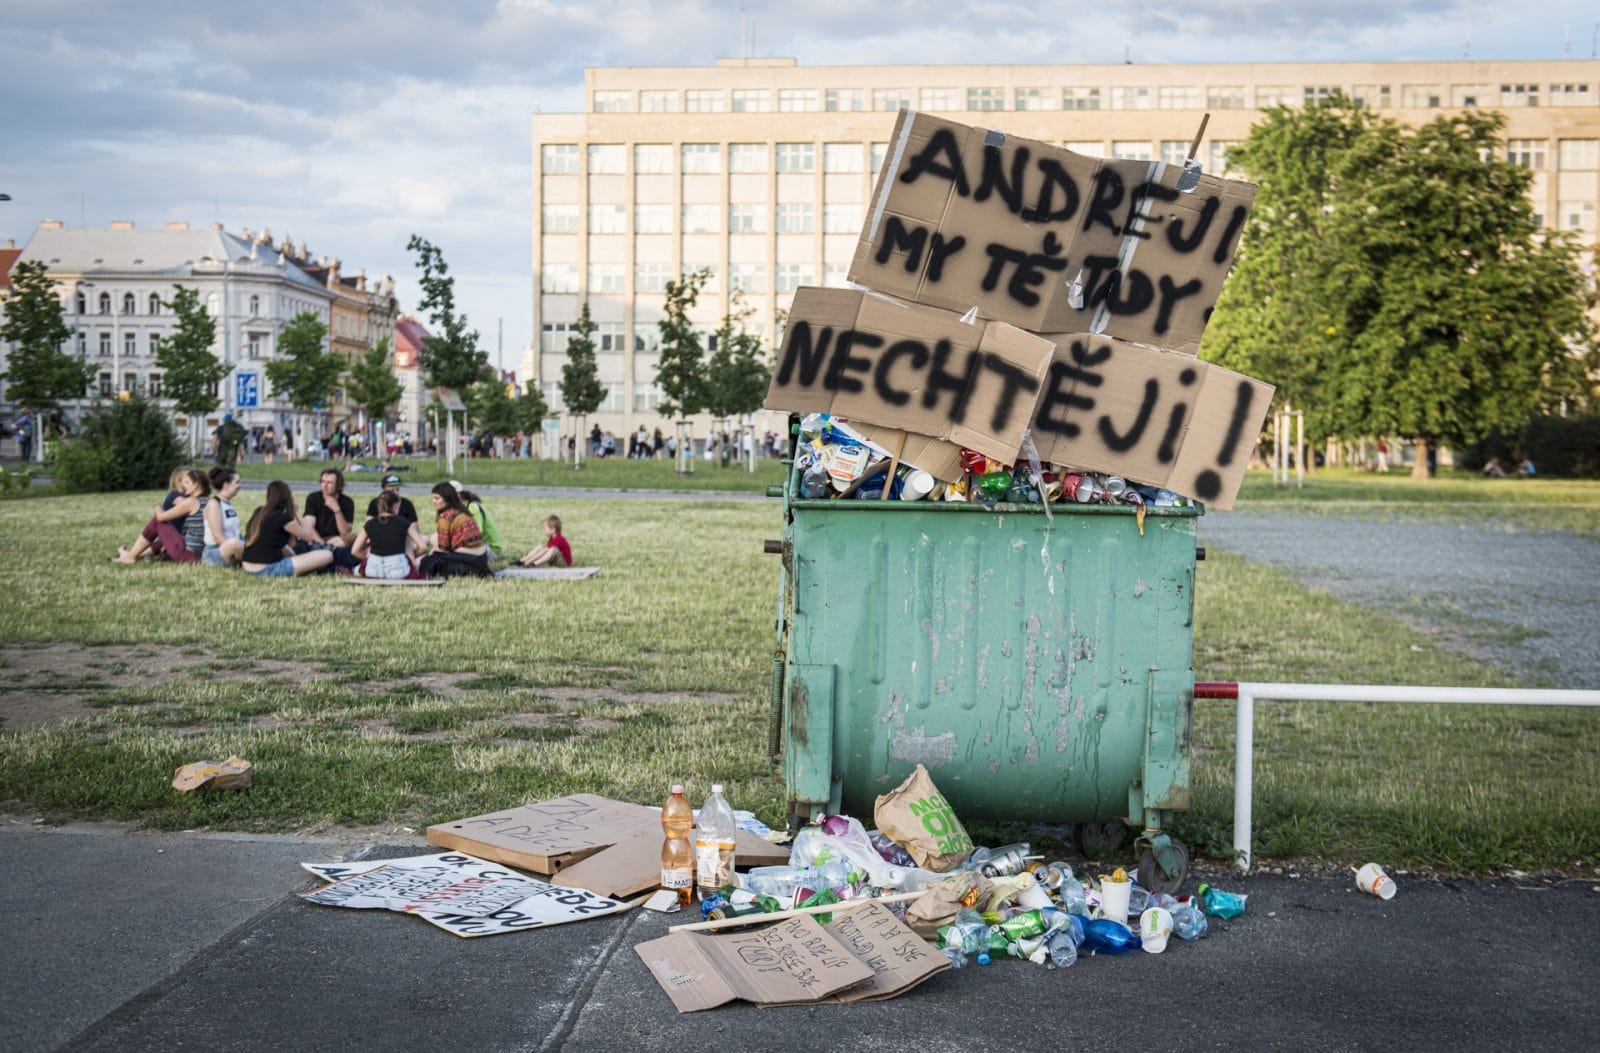 Praga-protesty-andrej-babis-2019